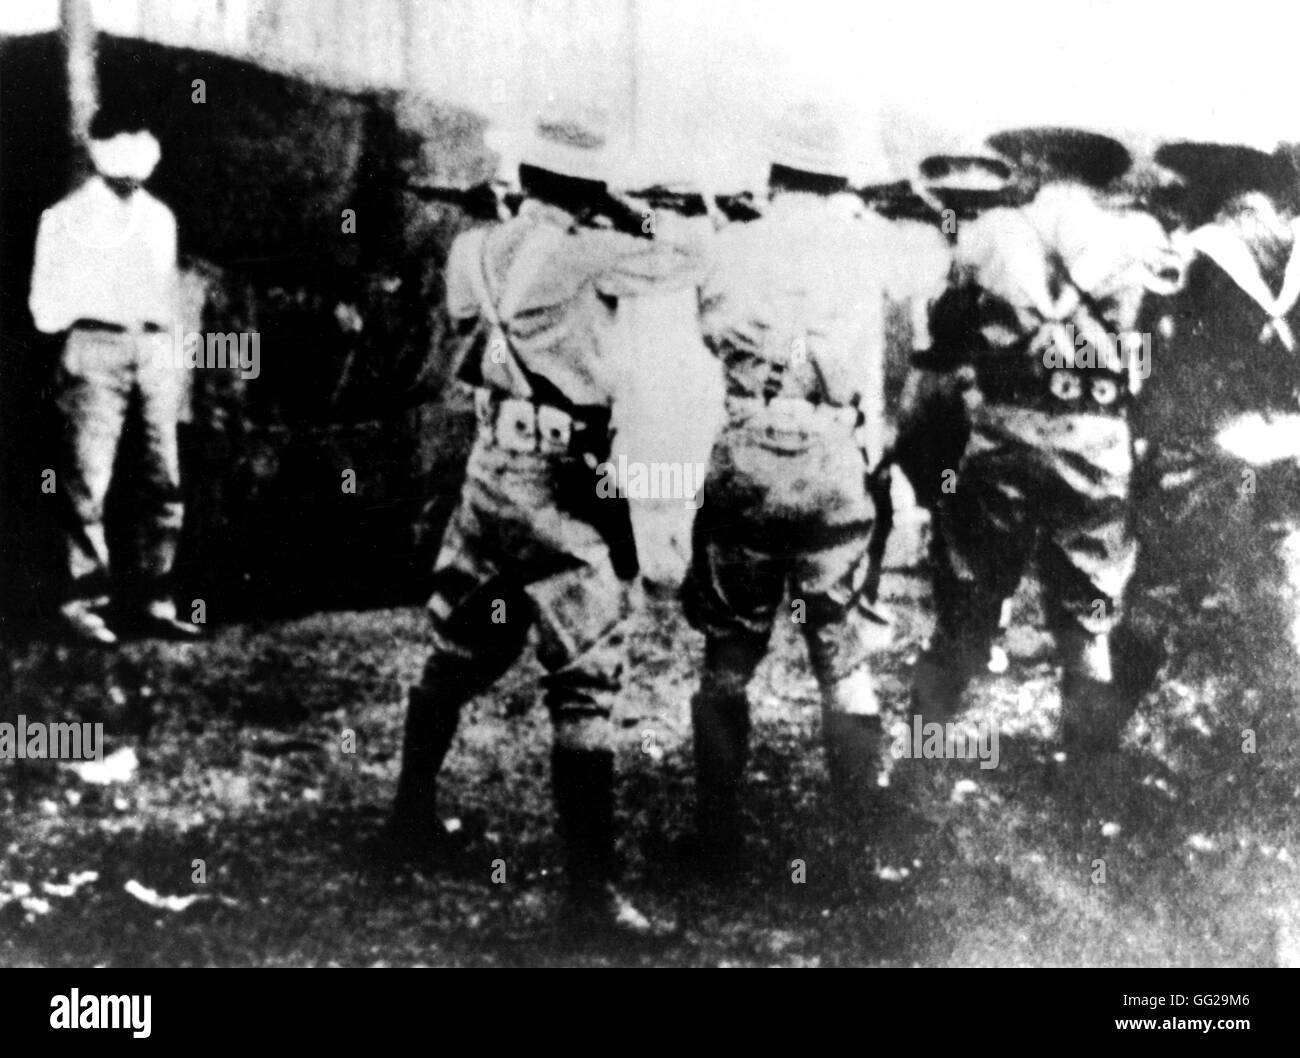 Ejecución de José Castillo Puentes, acusado del asesinato del teniente Juan Alvarez durante una batalla entre los rebeldes y las tropas regulares de 1935 Cuba National Archives, Washington Foto de stock